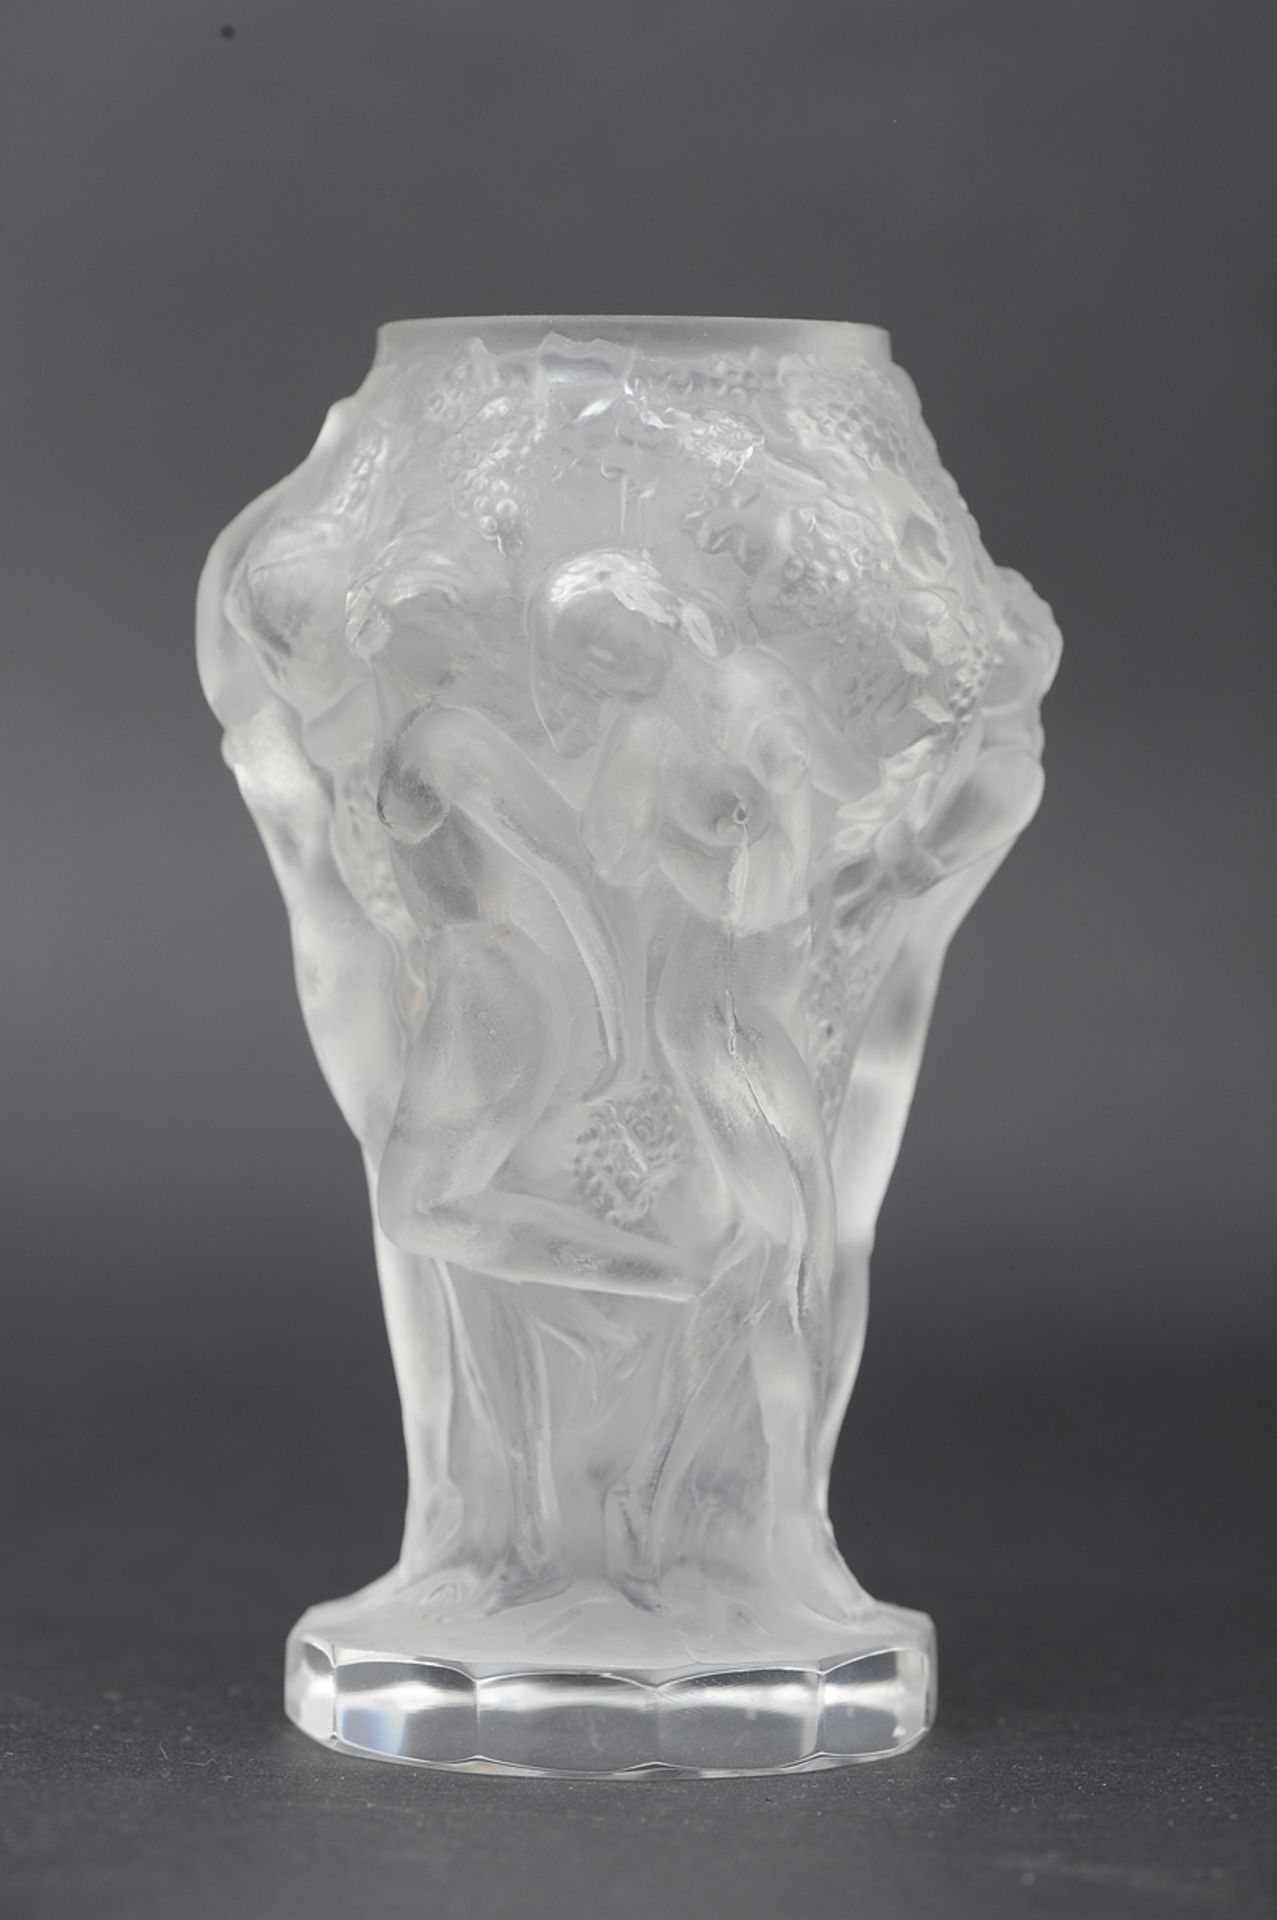 4teiliges Lot unterschiedlicher, ornamental gestalteter Pressglas - Objekte, teilweise Böhmen, best - Image 2 of 12